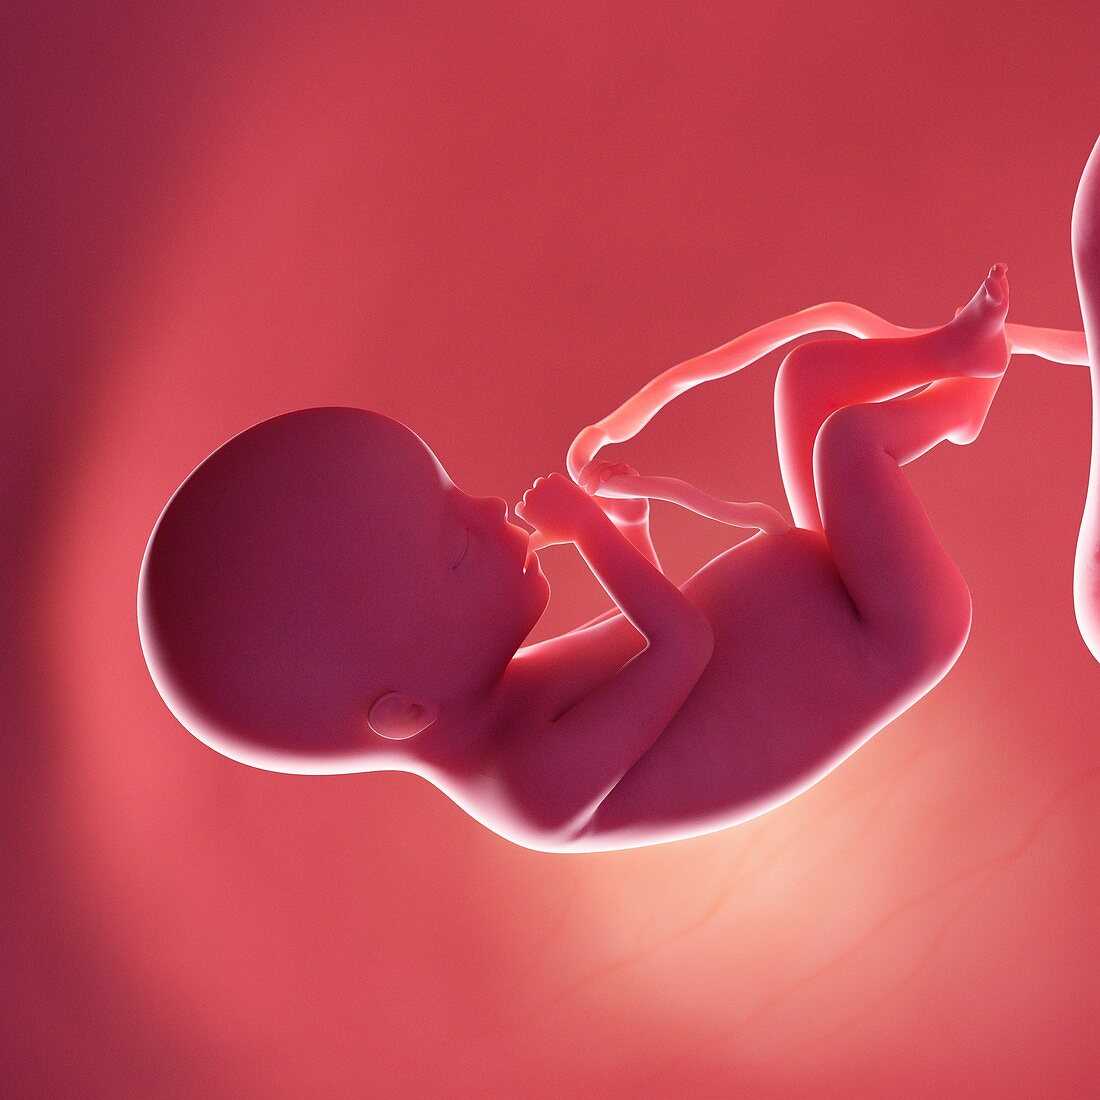 Fetus at week 20, illustration